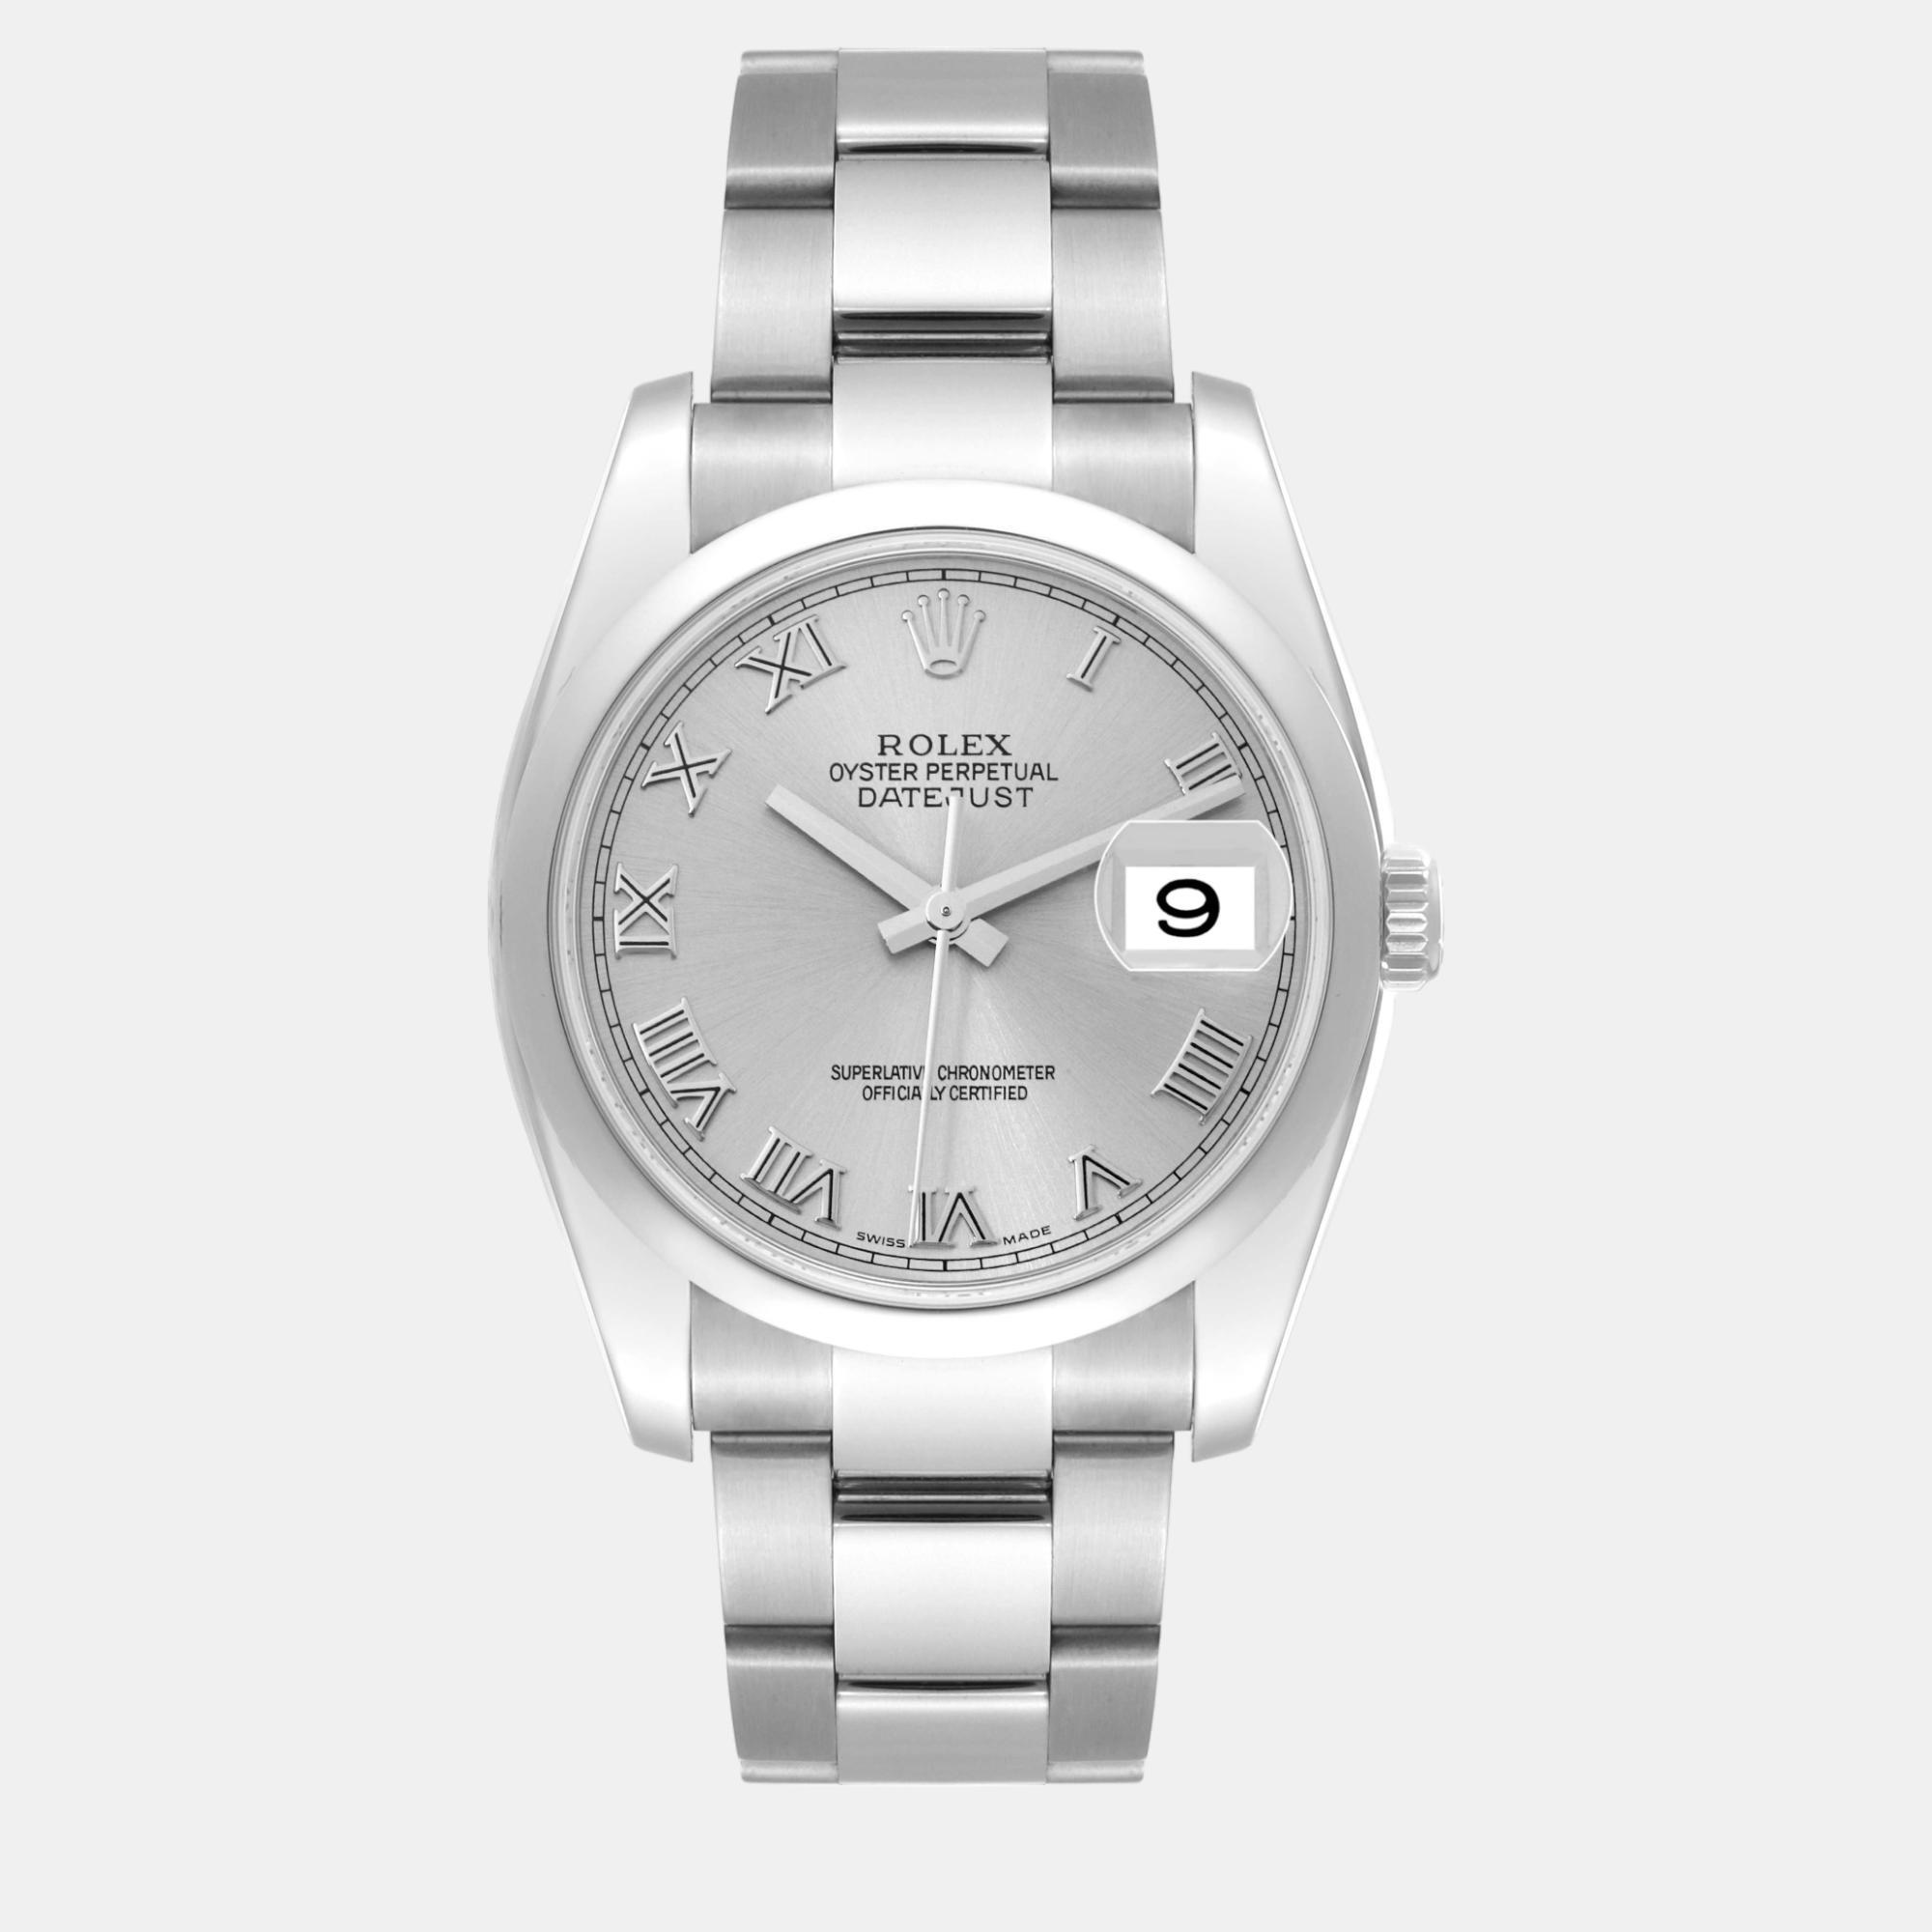 Rolex datejust silver roman dial steel men's watch 36.0 mm